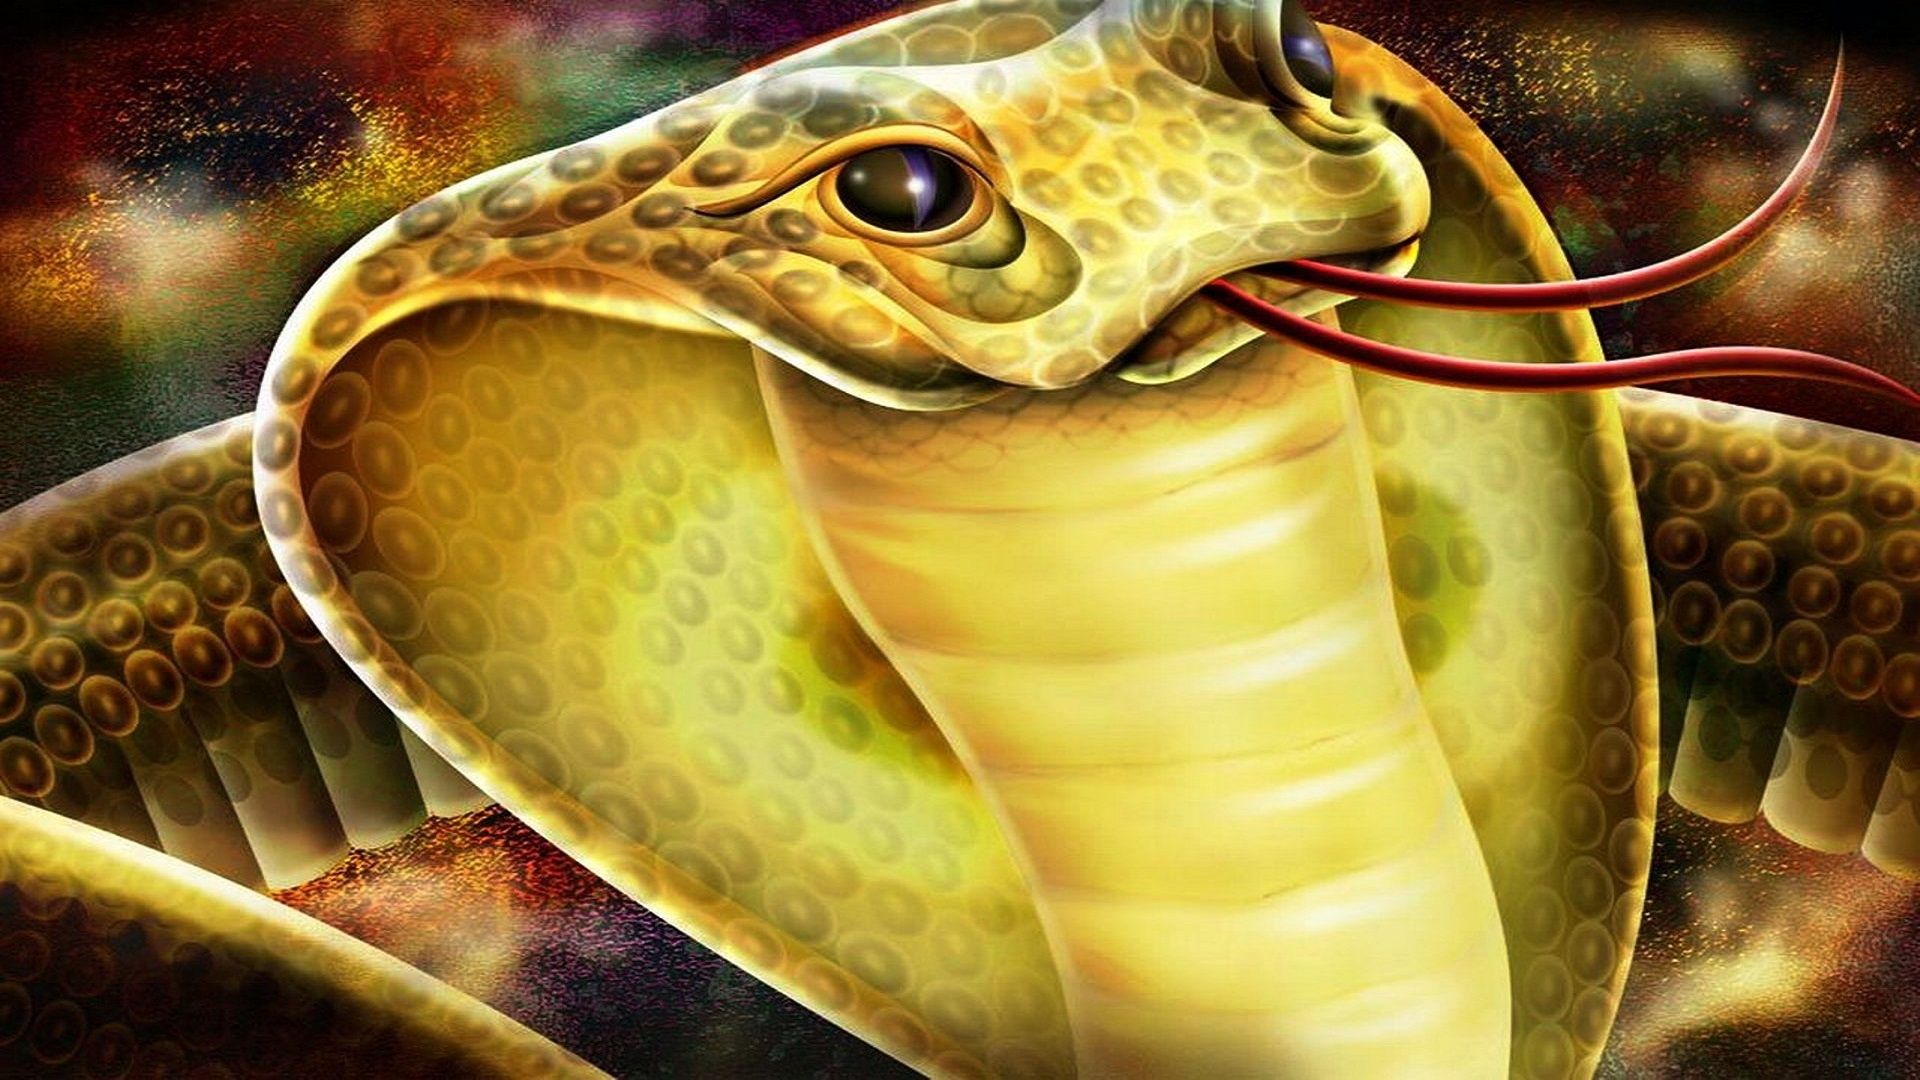 king cobra hd wallpaper download,snake,reptile,organism,serpent,elapidae